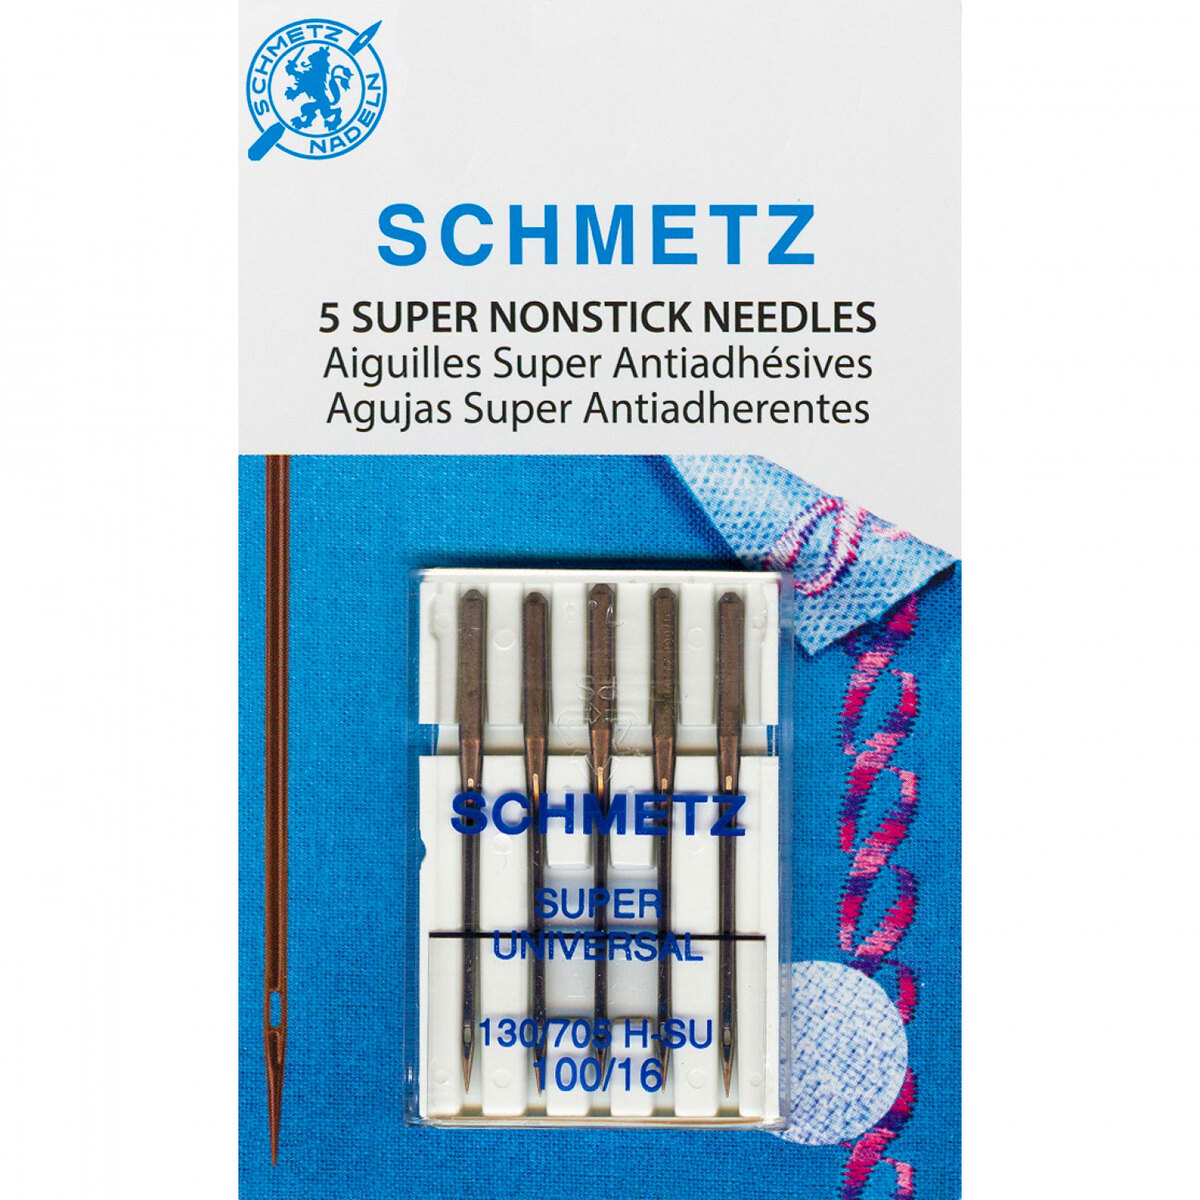 Size 100/16 - Schmetz Super Nonstick Needles